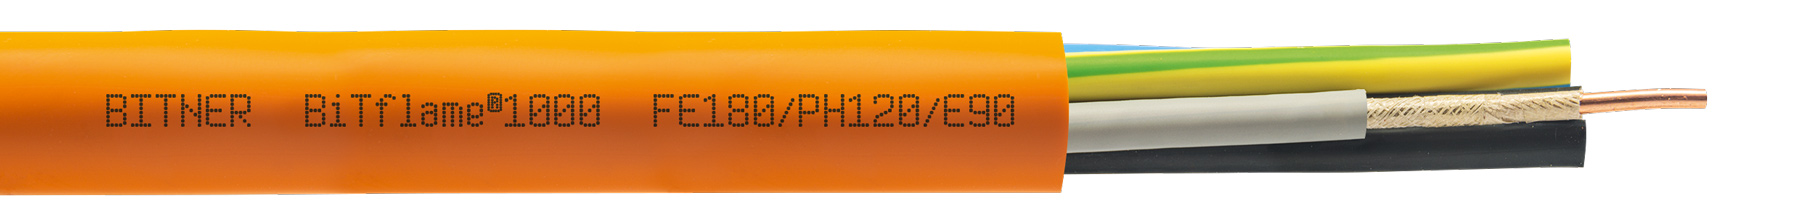 BiTflame®1000 3G1,5 RE FE180/PH120/E90 0,6/1kV ognioodporny, bezhalogenowy, kabel zasilający i sygnalizacyjny (NHXH-J3x1,5); BITNER